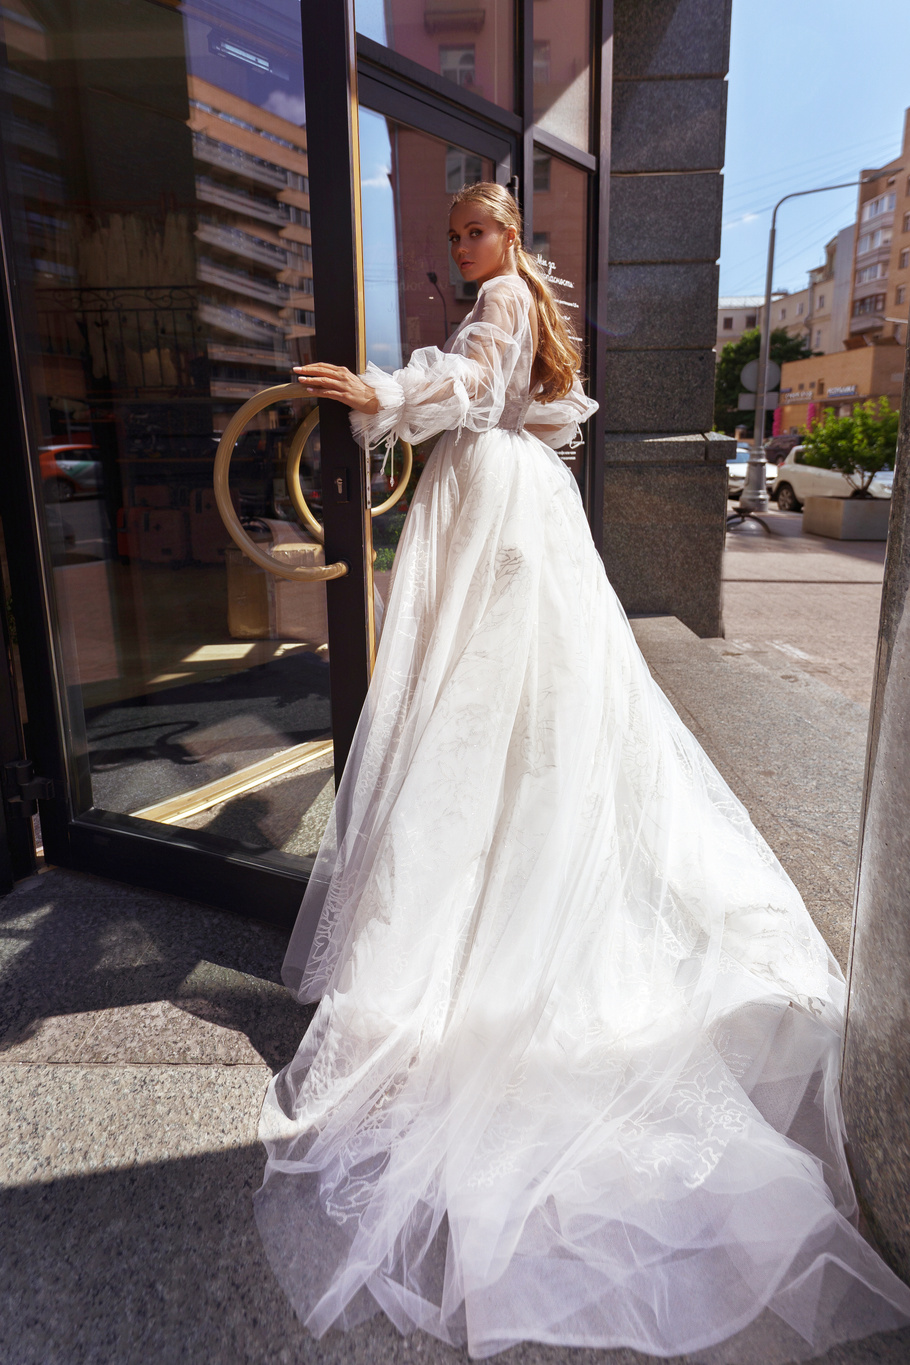 Купить свадебное платье «Миней» Бламмо Биамо из коллекции Нимфа 2020 года в Москве